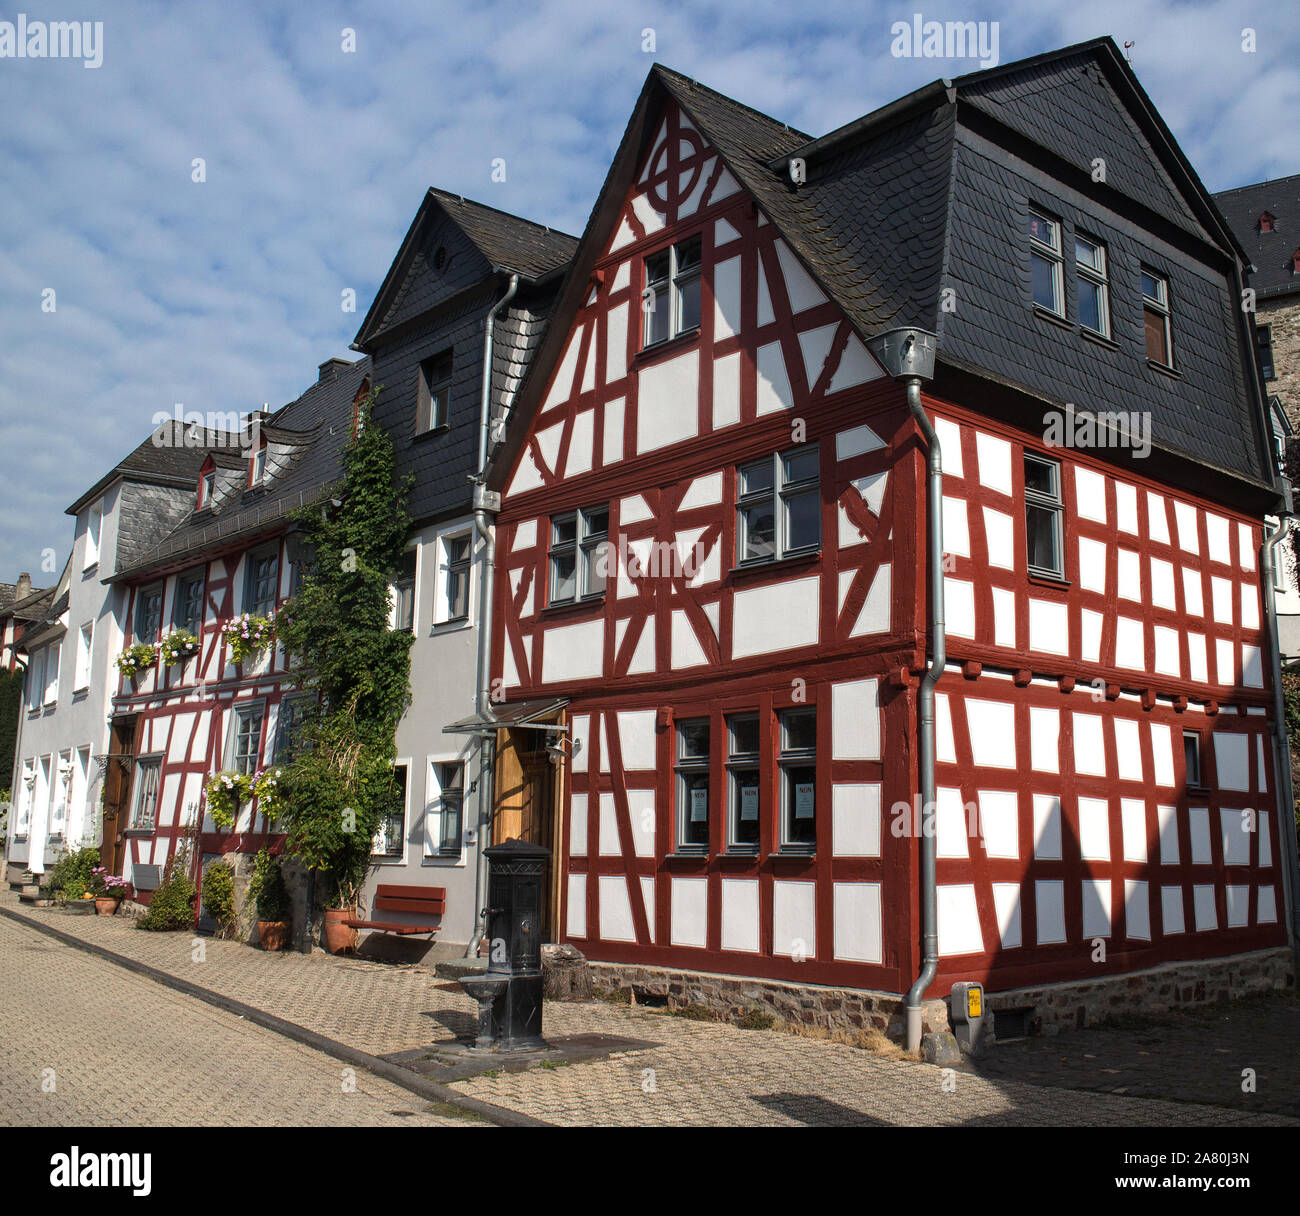 Maisons à colombages de Limburg an der Lahn, Bavière, Allemagne Banque D'Images